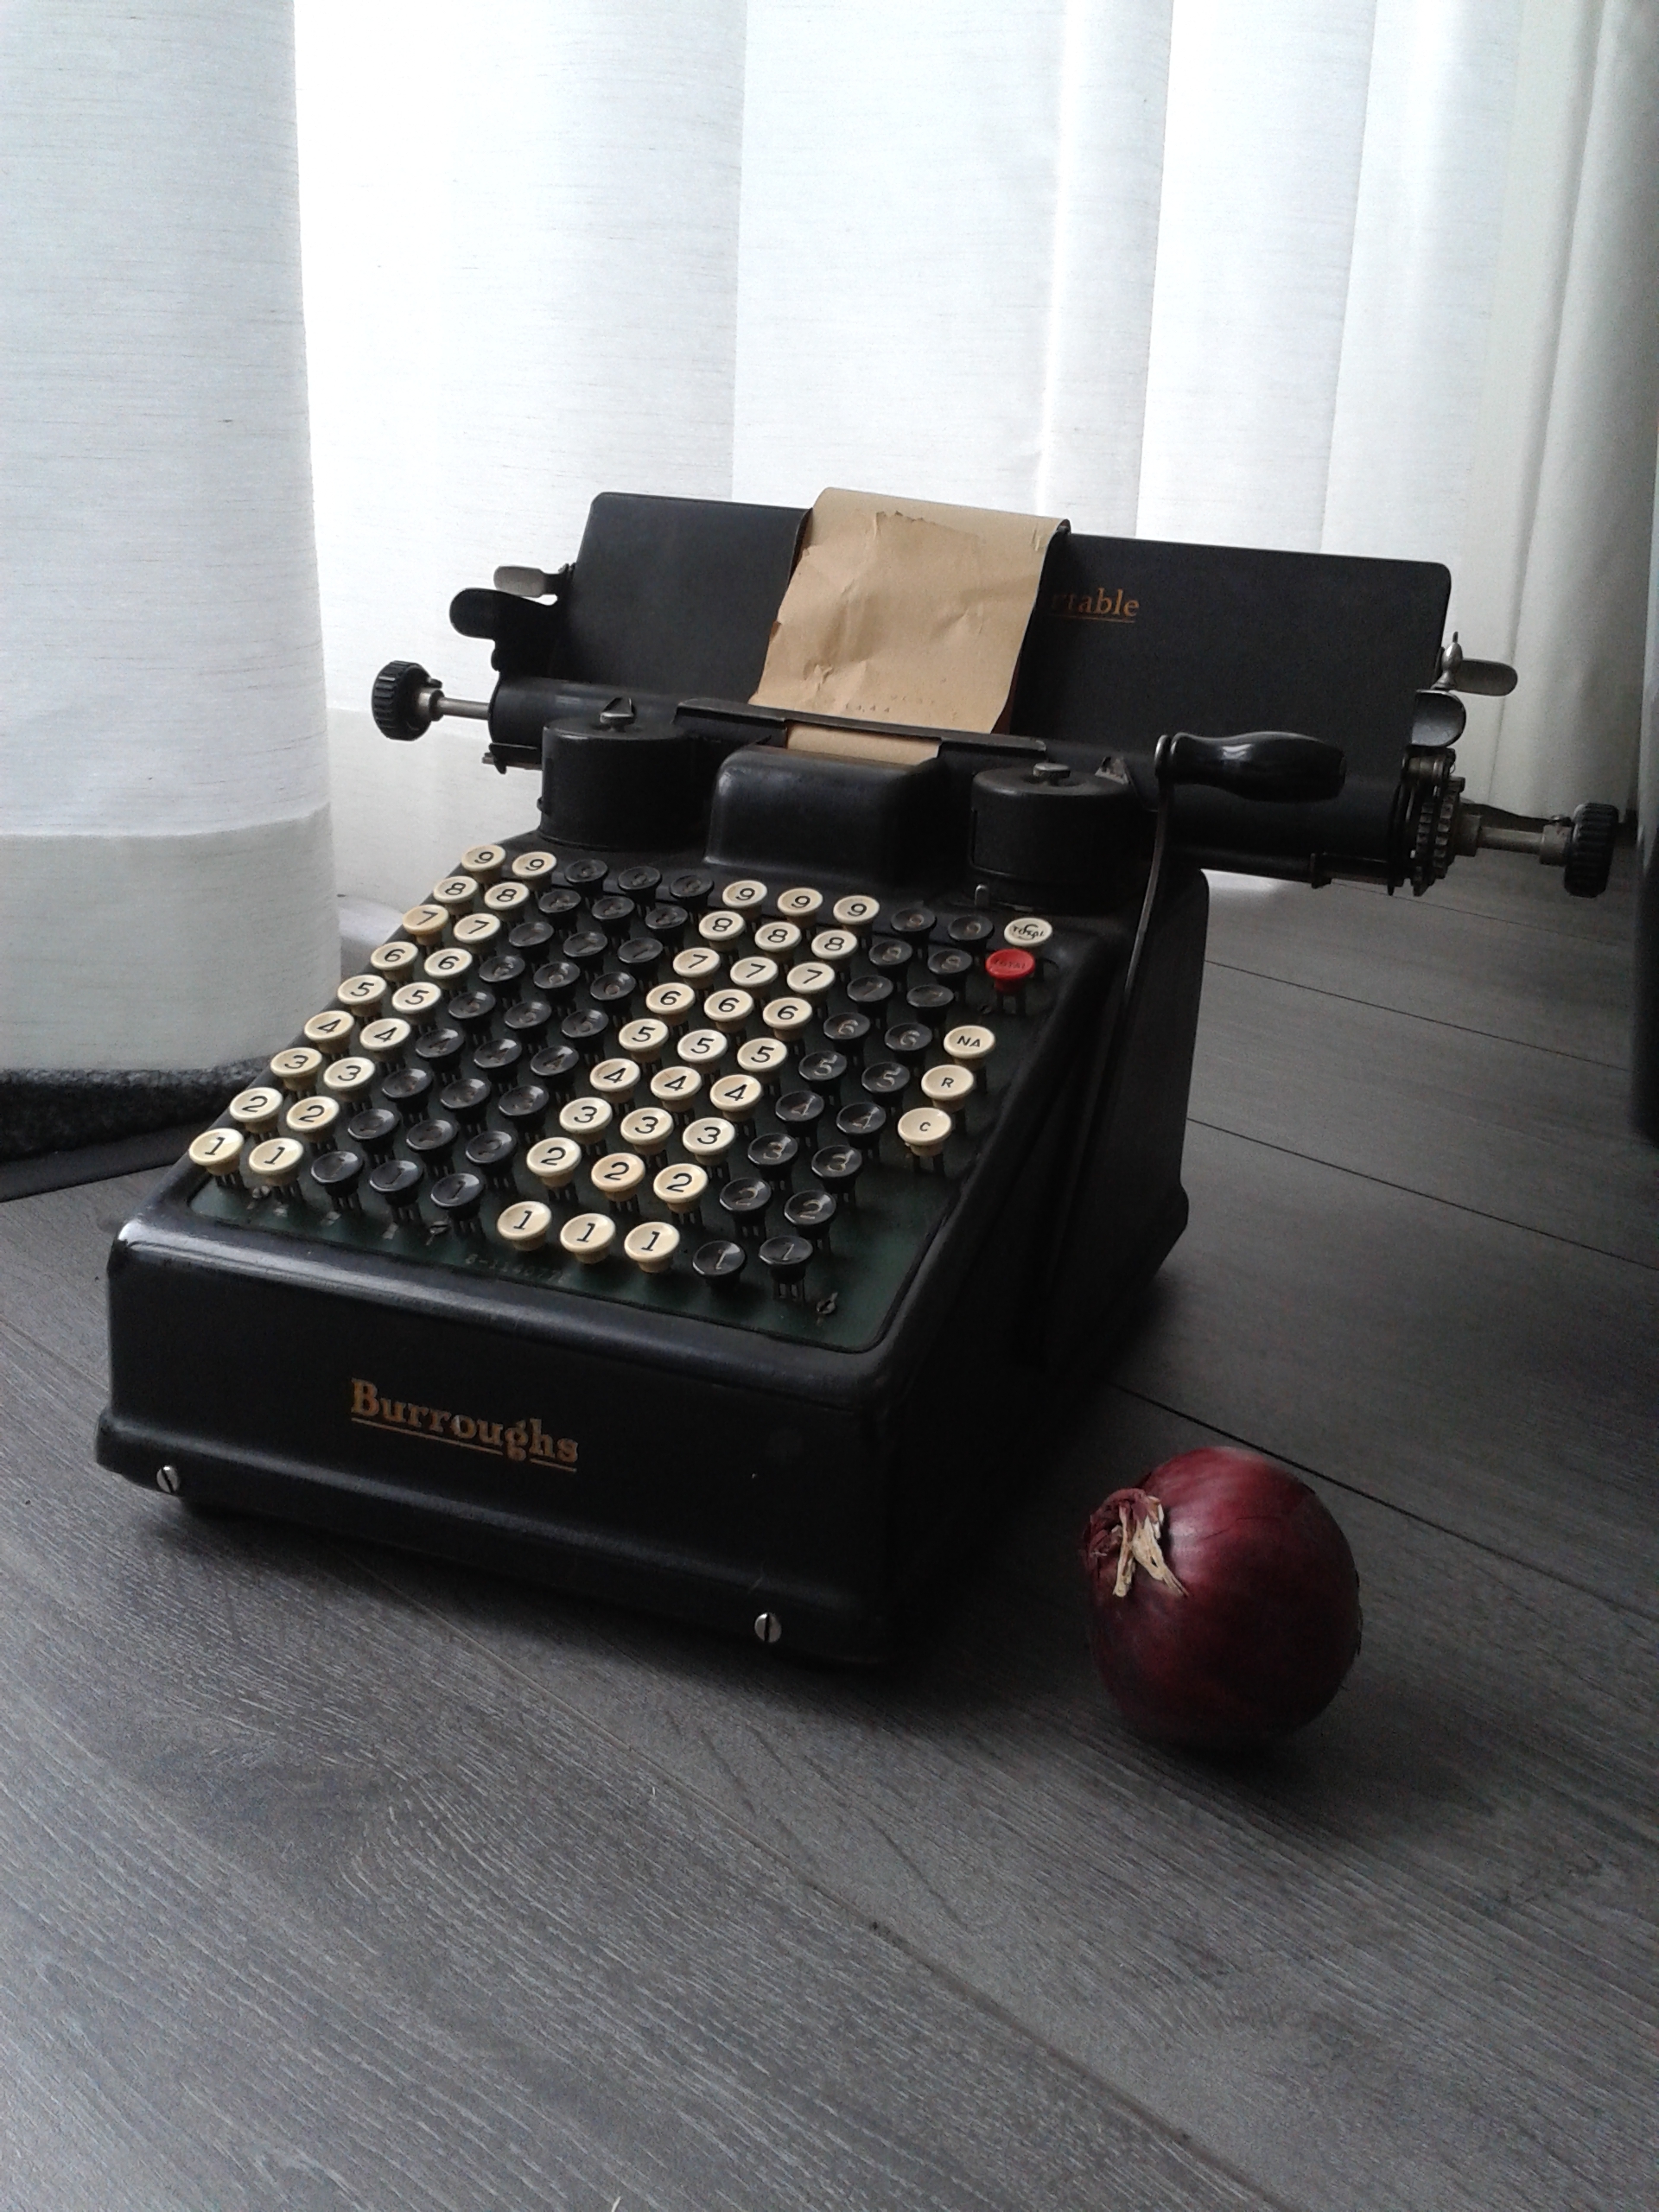 Burroughs Portable Calculator